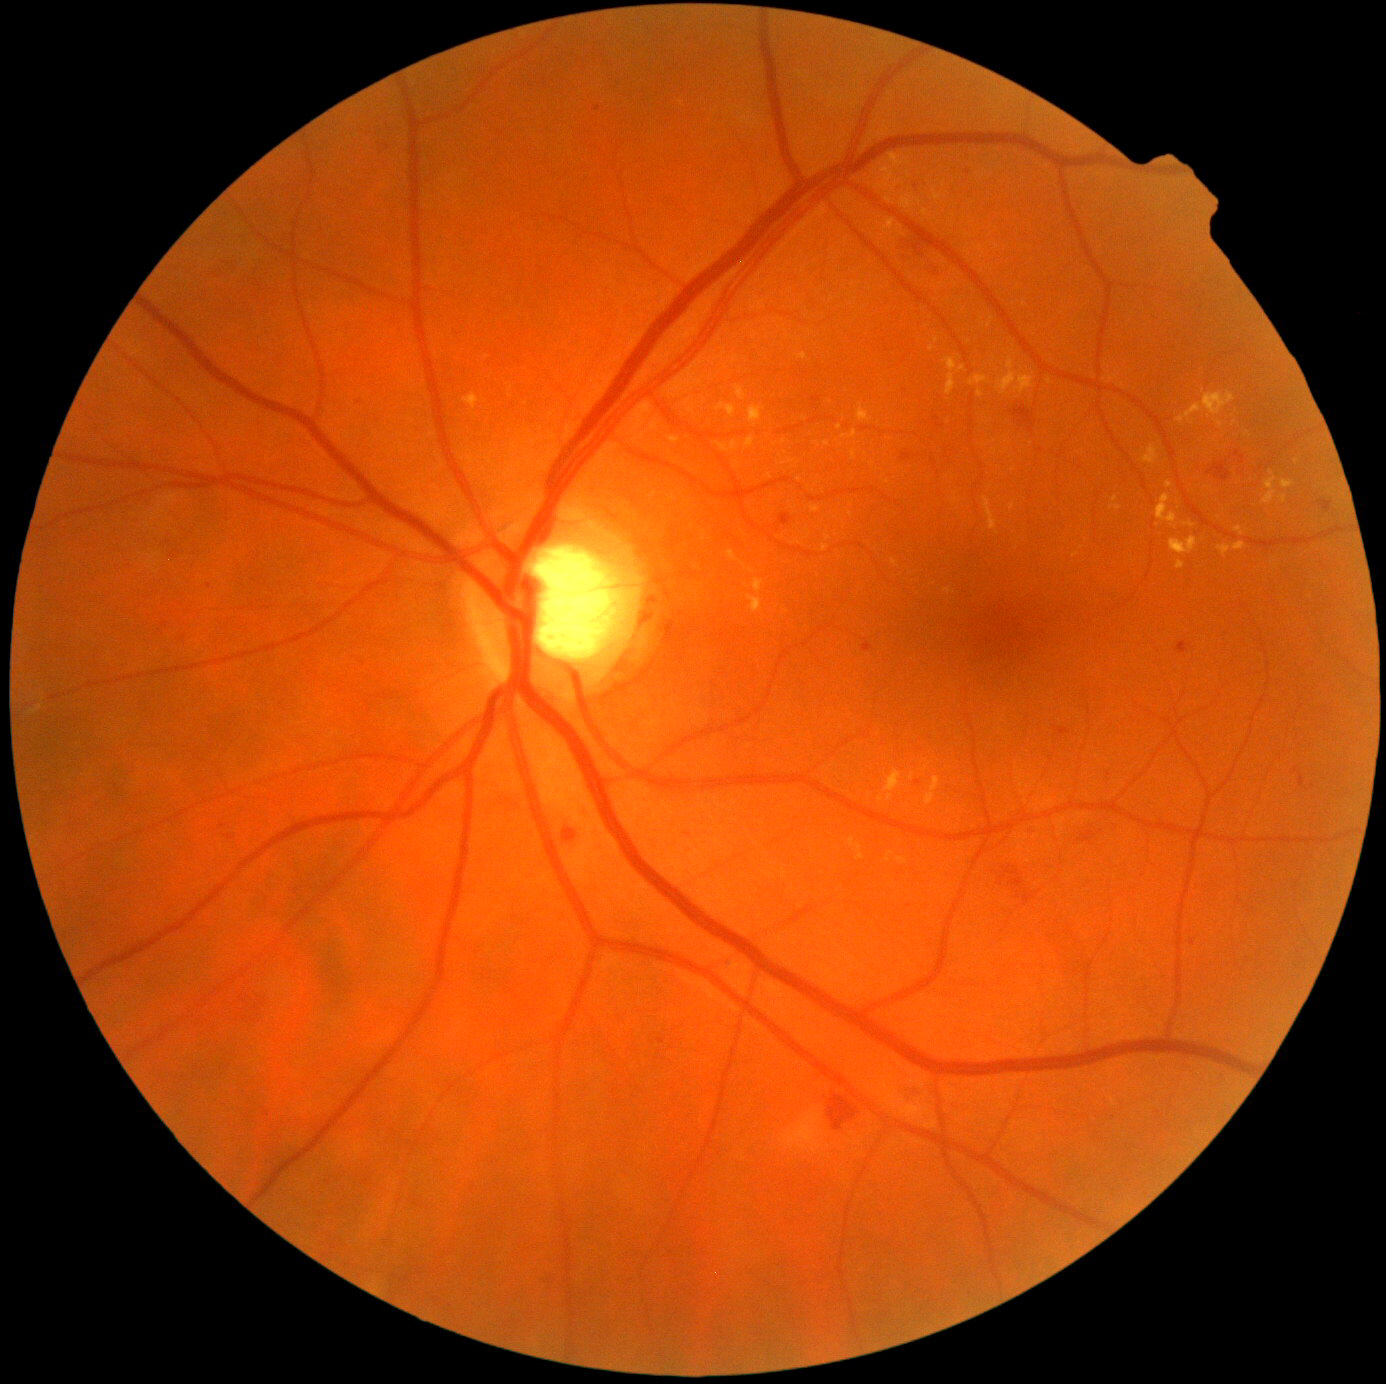 高度近视和眼底病有什么关系？眼底病是不可逆性致盲重要因素，是危言耸听吗？_视网膜